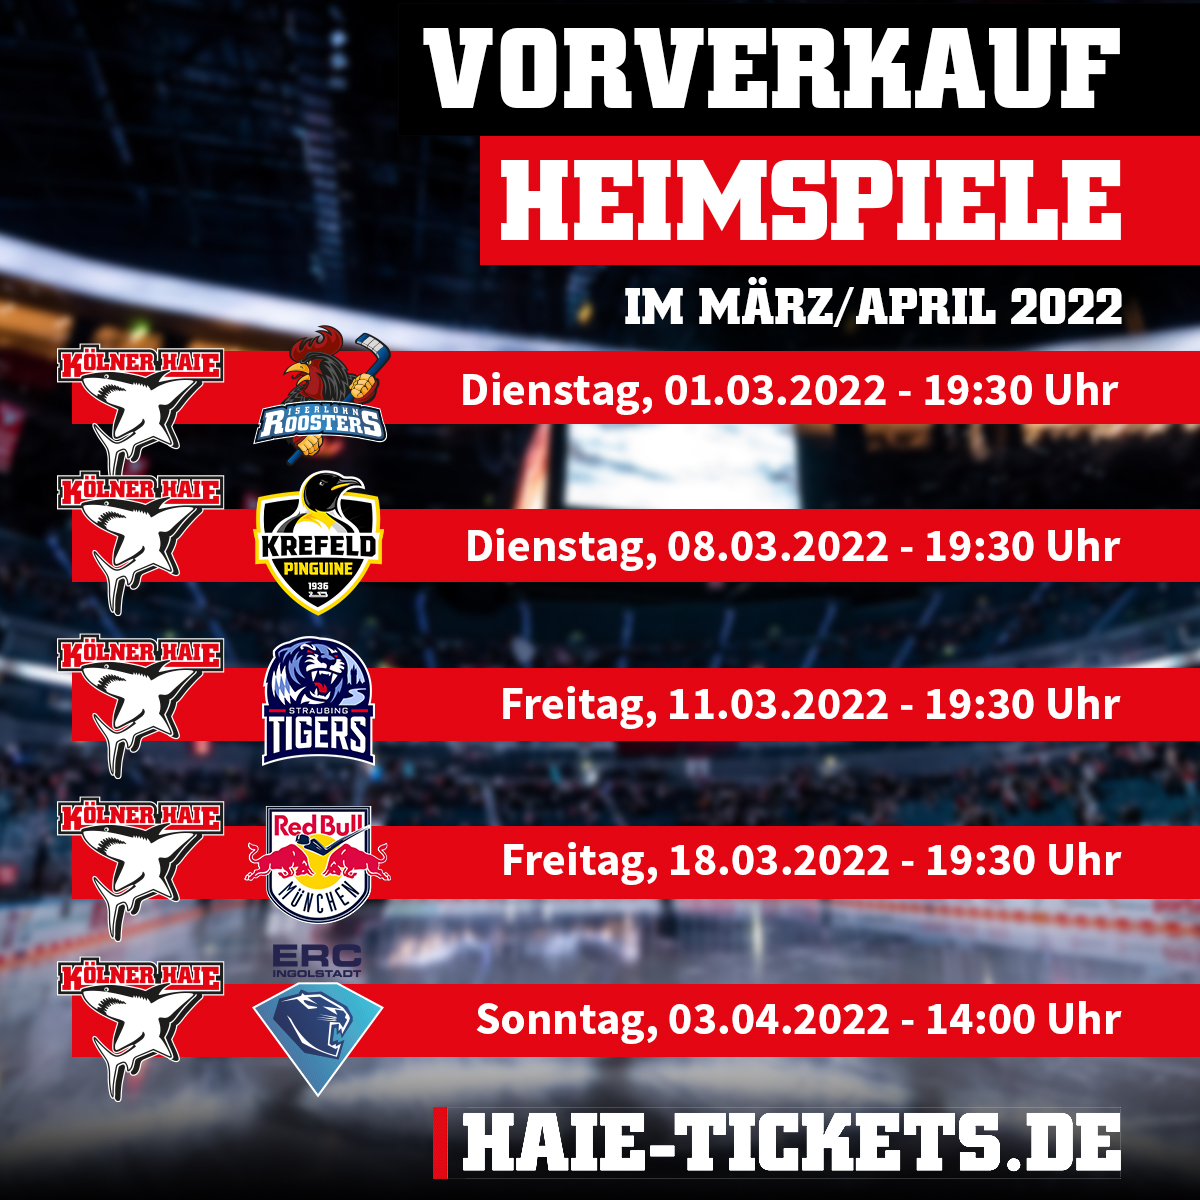 Tickets für alle Heimspiele der Hauptrunde Haie.de